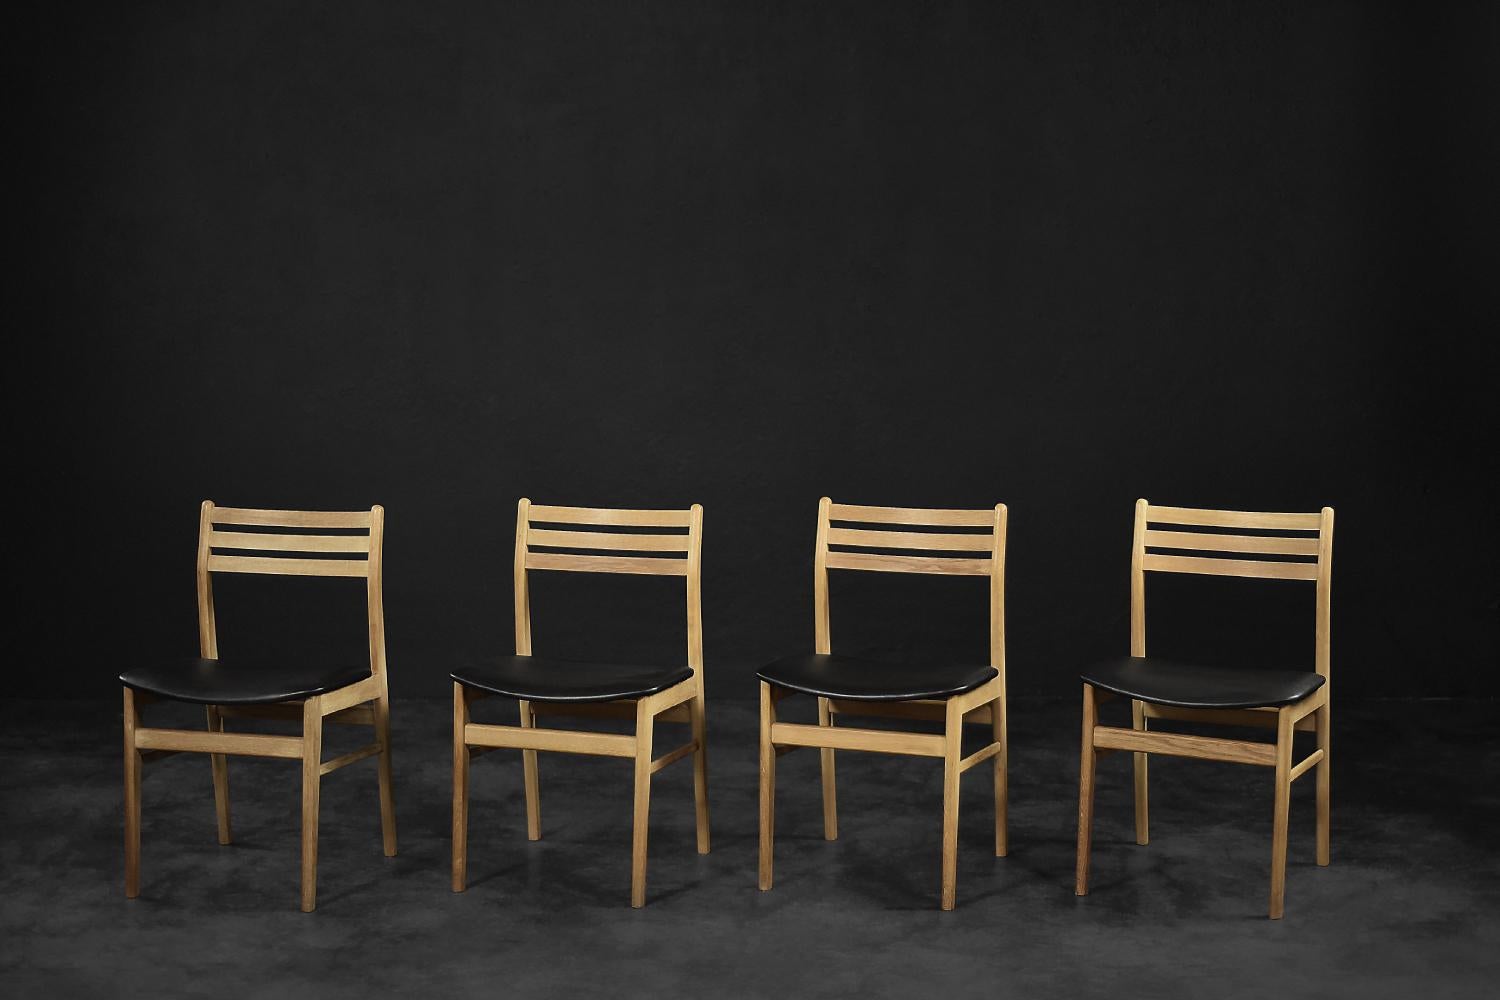 Cet ensemble de quatre chaises de salle à manger a été produit dans les années 1960 par la manufacture danoise Sax Møbelfabrik. Les chaises sont fabriquées en bois de chêne dans une teinte naturelle, chaude et ensoleillée. Le bois présente un grain